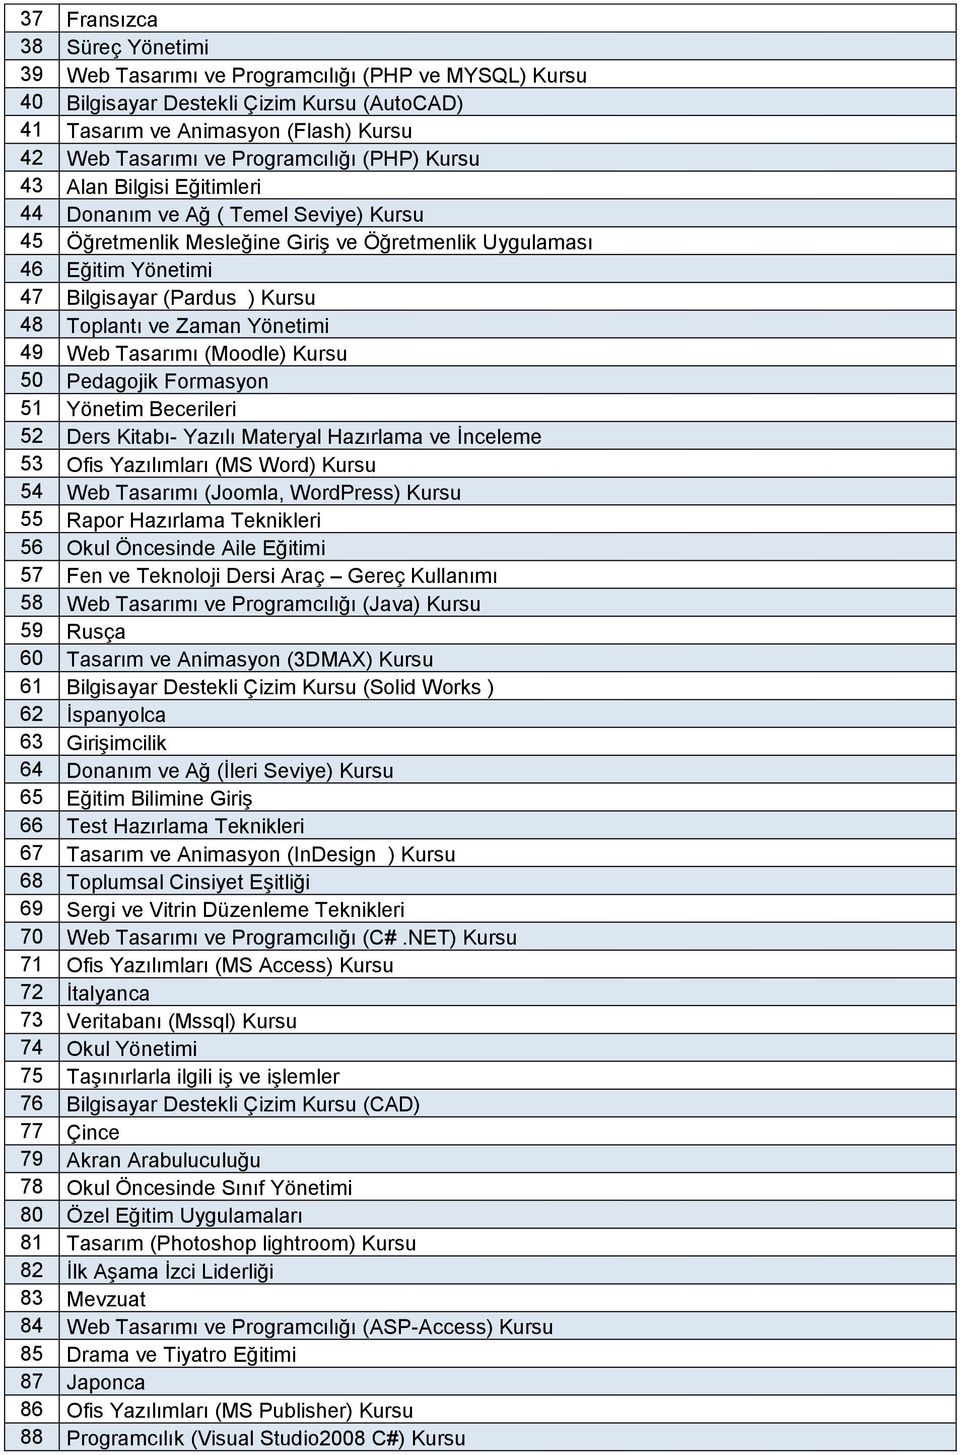 48 Toplantı ve Zaman Yönetimi 49 Web Tasarımı (Moodle) Kursu 50 Pedagojik Formasyon 51 Yönetim Becerileri 52 Ders Kitabı- Yazılı Materyal Hazırlama ve İnceleme 53 Ofis Yazılımları (MS Word) Kursu 54